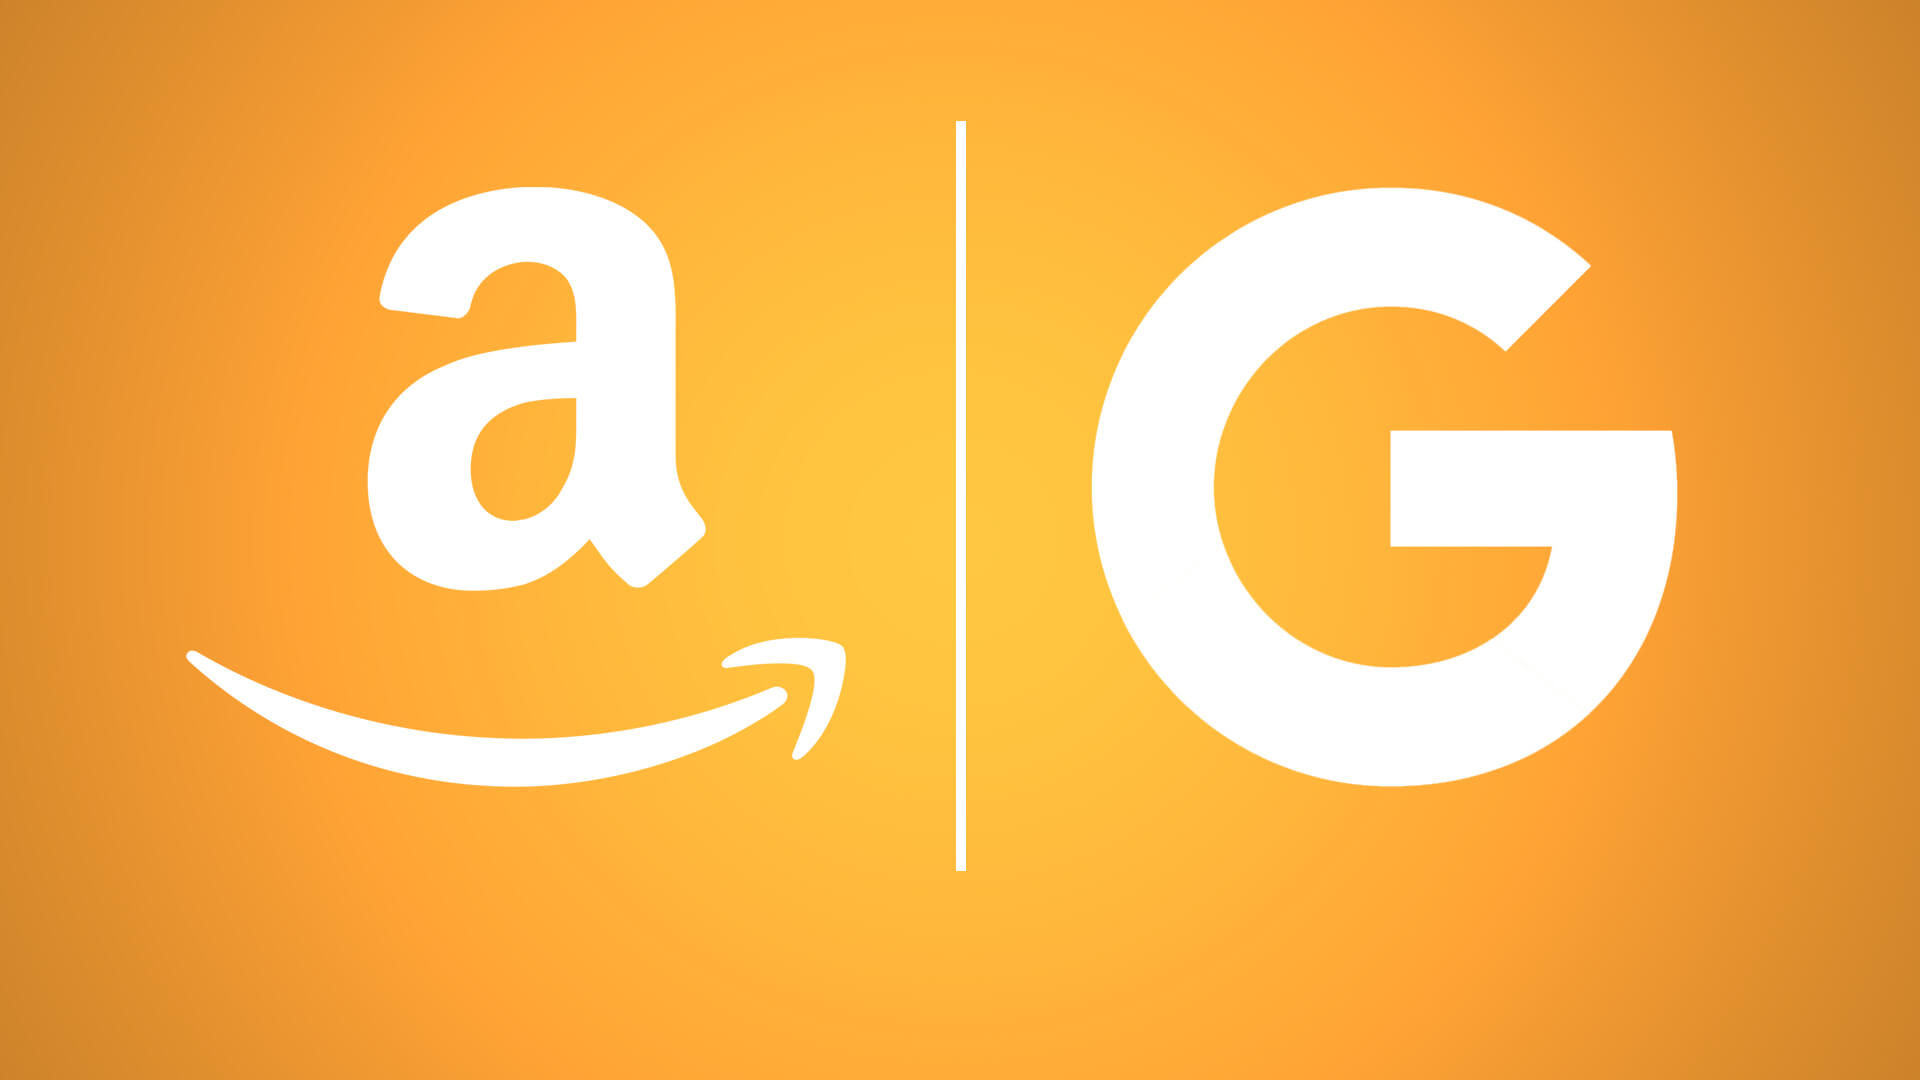 Algunos grandes presupuestos de búsqueda se están trasladando a Amazon, dicen los ejecutivos de la agencia